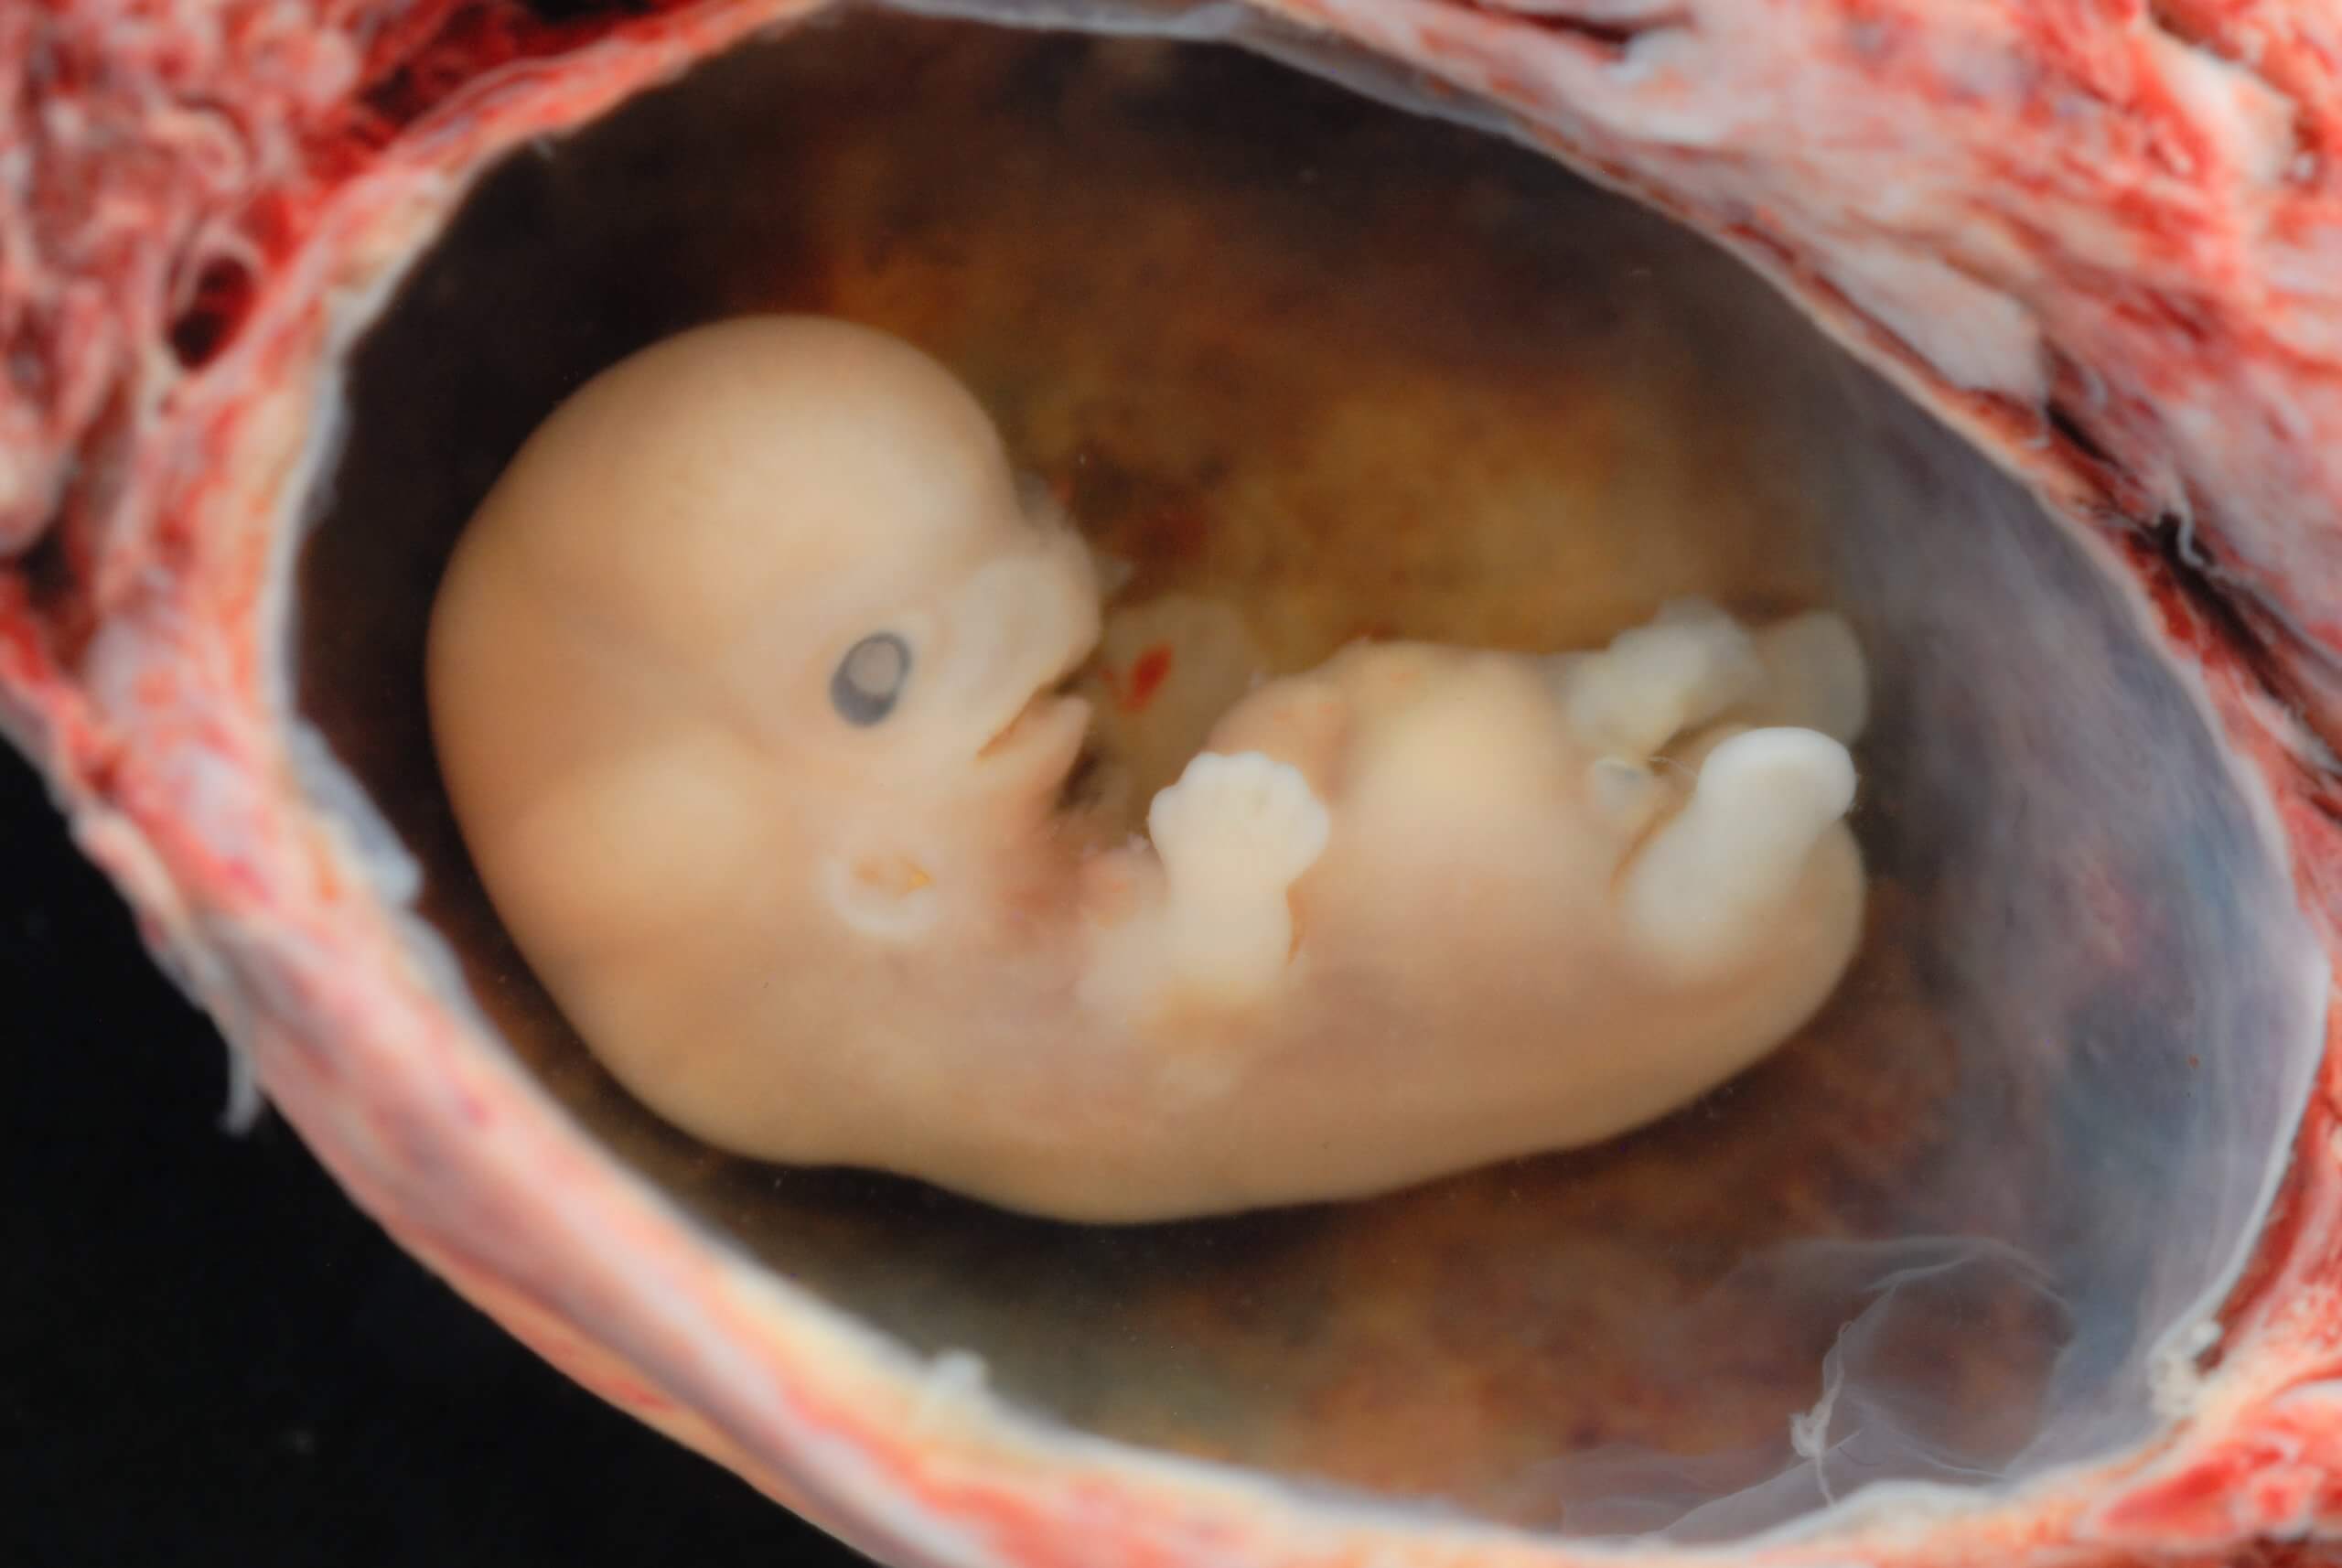 Embryo at 8 weeks